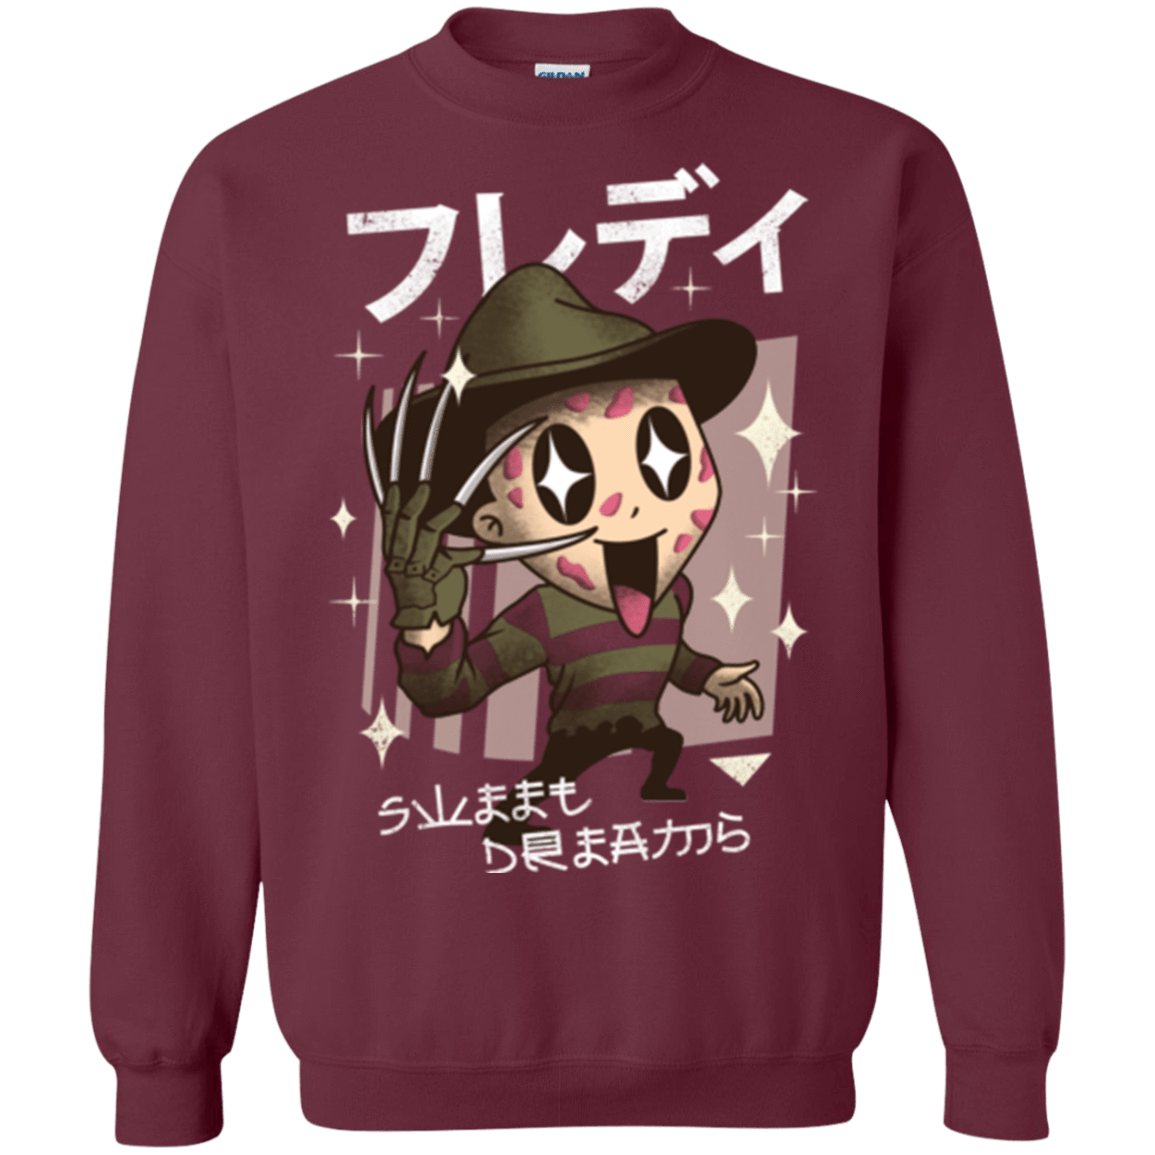 Sweatshirts Maroon / Small Kawaii Dreams Crewneck Sweatshirt